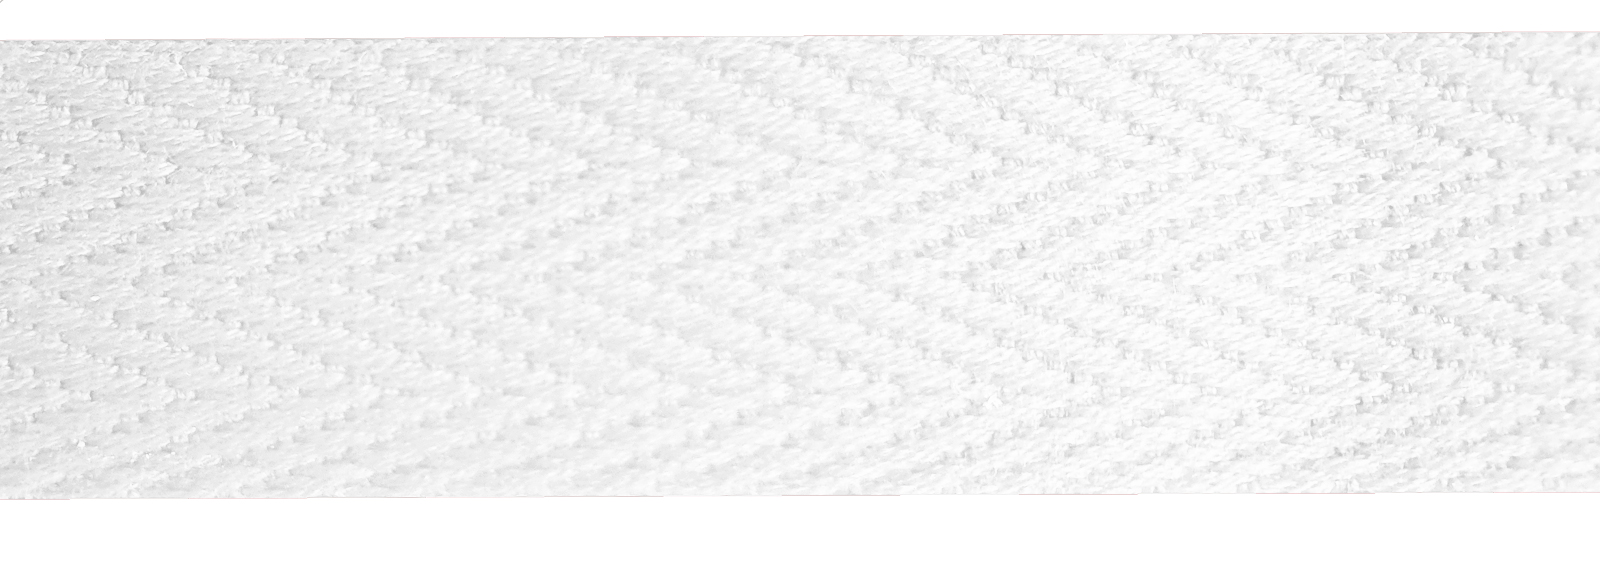 Baumwollband 20 mm weiß, Meterware